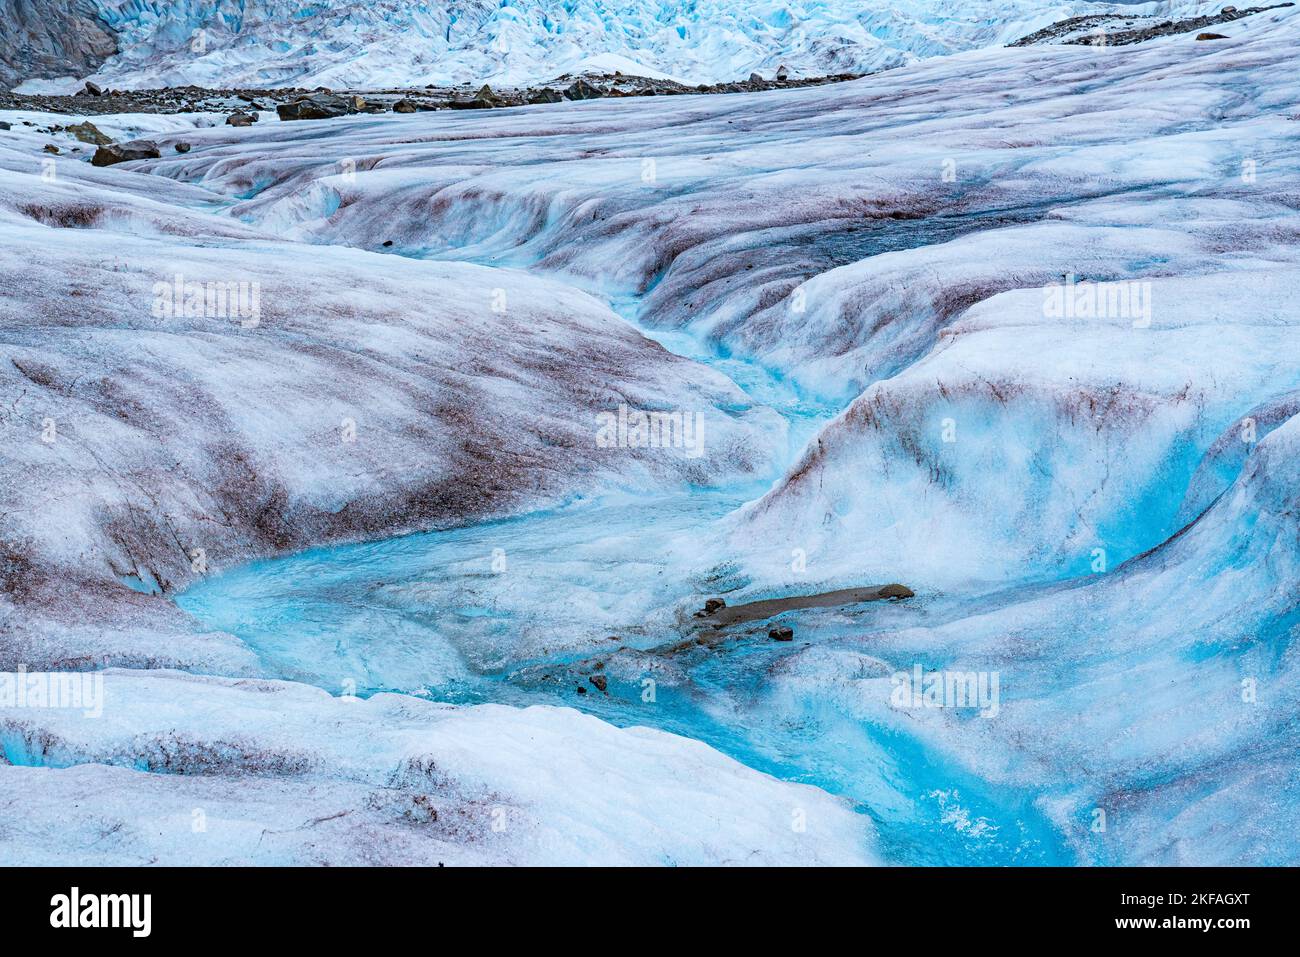 La fonte de la glace du glacier Mendenhall, en Alaska, forme un ruisseau sinueux d'eau bleue cristalline Banque D'Images